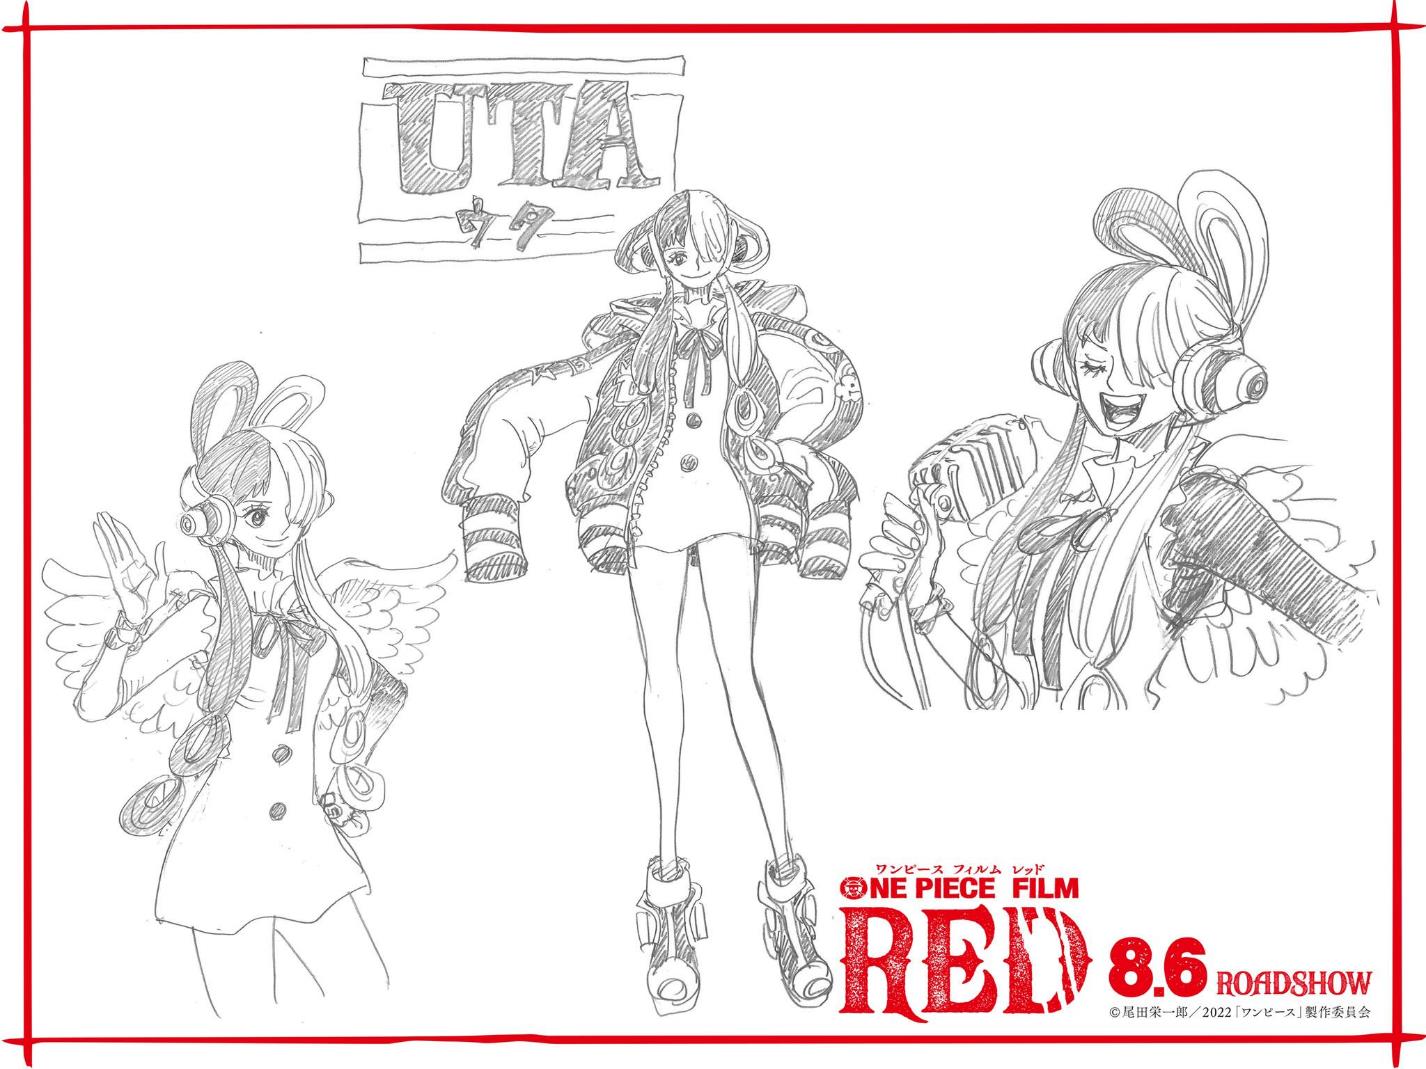 Trailer One Piece Film Red là một khám phá tuyệt vời đối với các fan của Anime. Video sẽ giúp bạn cảm nhận được tinh thần và hoạt động của phim, tạo thêm sự kích thích cho các fan chờ đợi bộ phim. Hãy xem hình ảnh liên quan và cùng thưởng thức trailer thú vị.